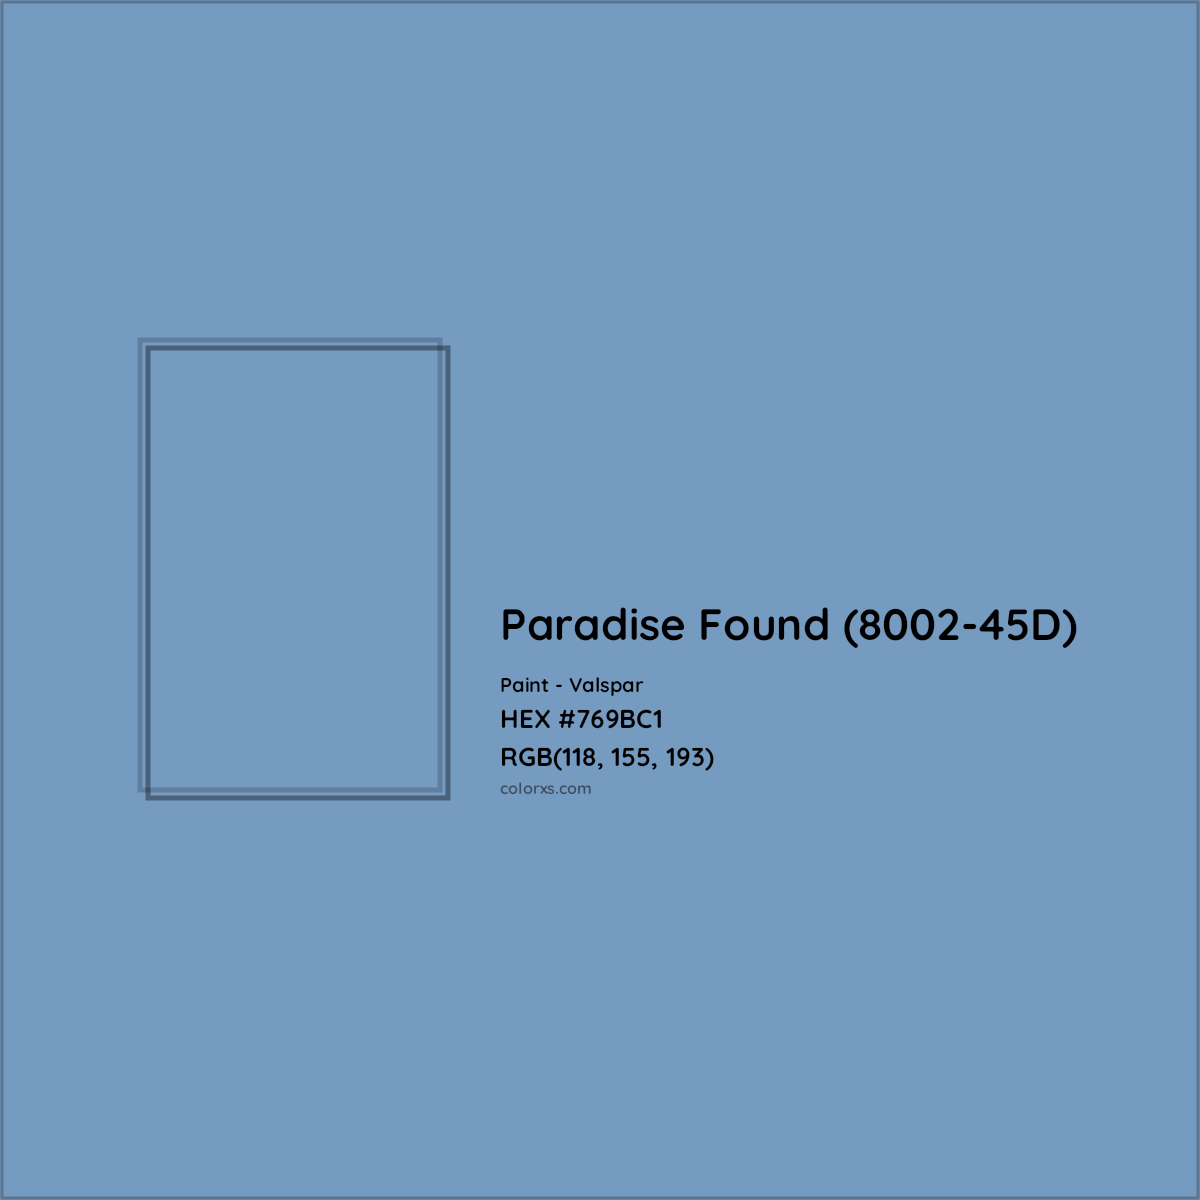 HEX #769BC1 Paradise Found (8002-45D) Paint Valspar - Color Code